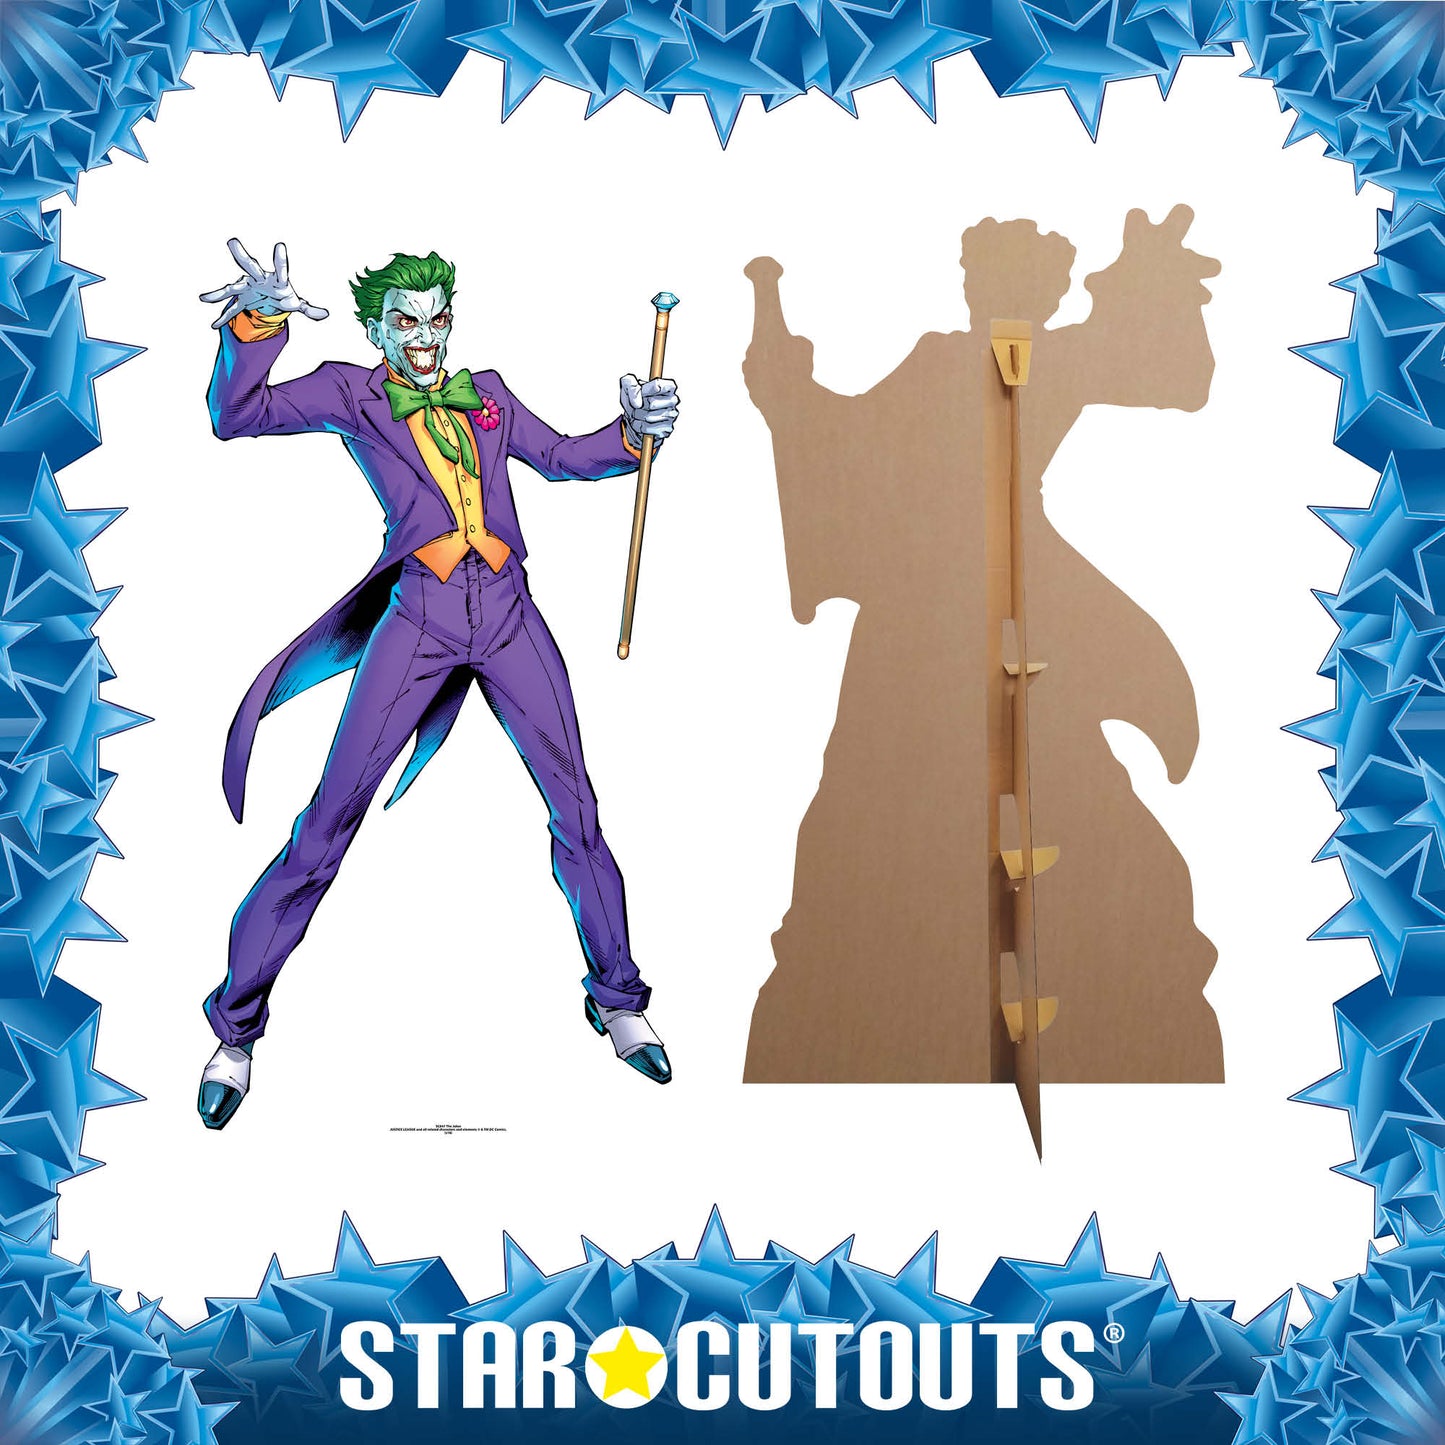 SC847 The Joker (DC-Comics) Cardboard Cut Out Height 176cm